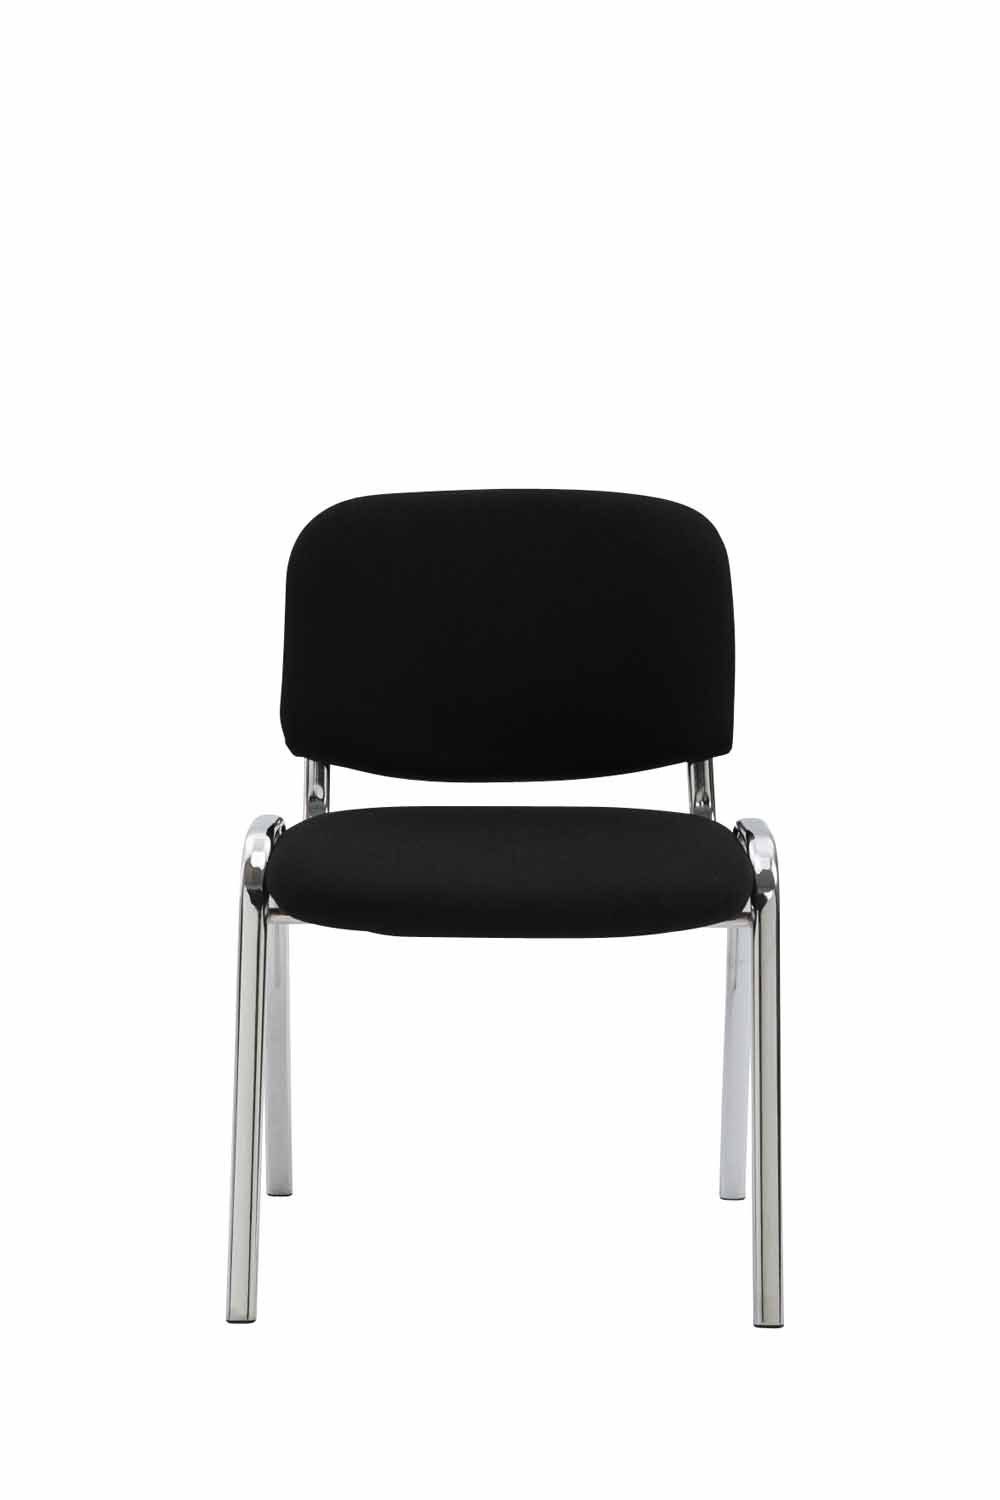 - Metall Besucherstuhl Sitzfläche: - - Gestell: - Warteraumstuhl chrom Messestuhl), hochwertiger Polsterung Stoff (Besprechungsstuhl Keen TPFLiving Konferenzstuhl mit schwarz